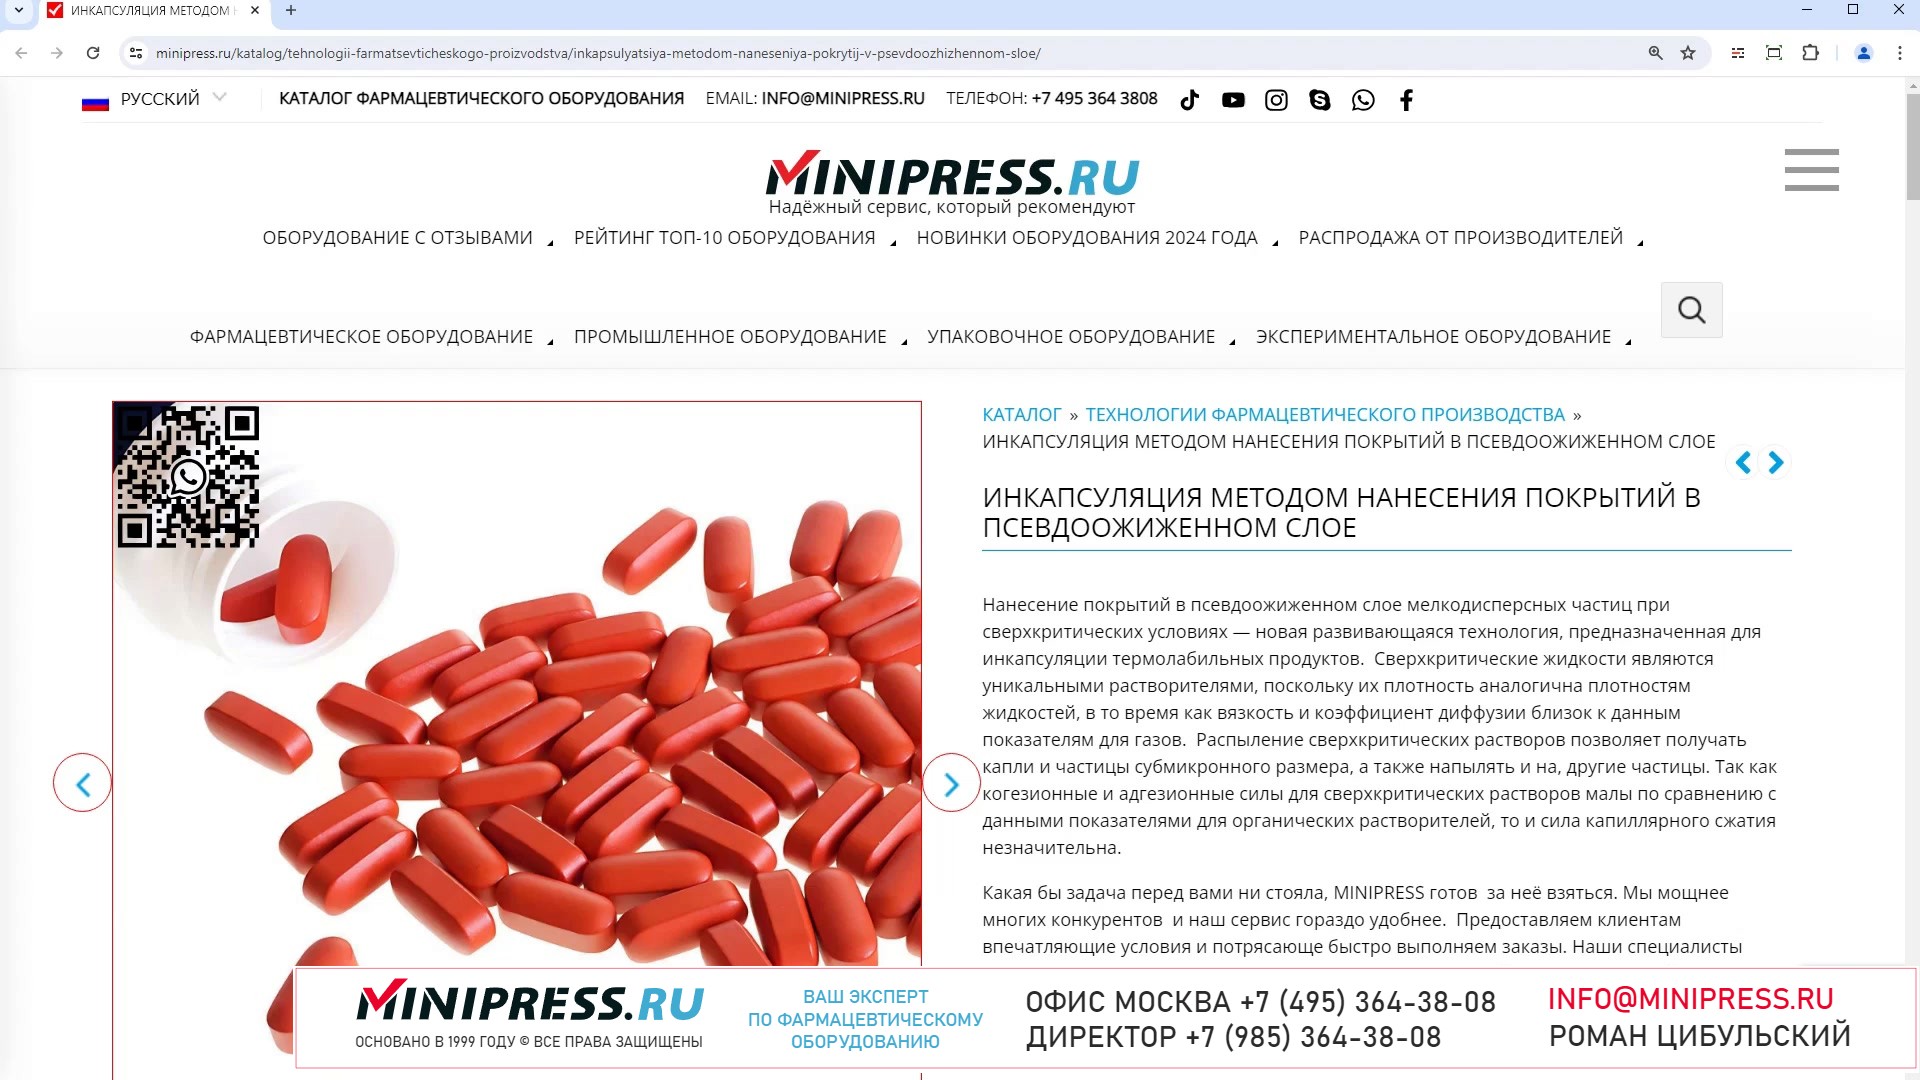 Minipress.ru Инкапсуляция методом нанесения покрытий в псевдоожиженном слое